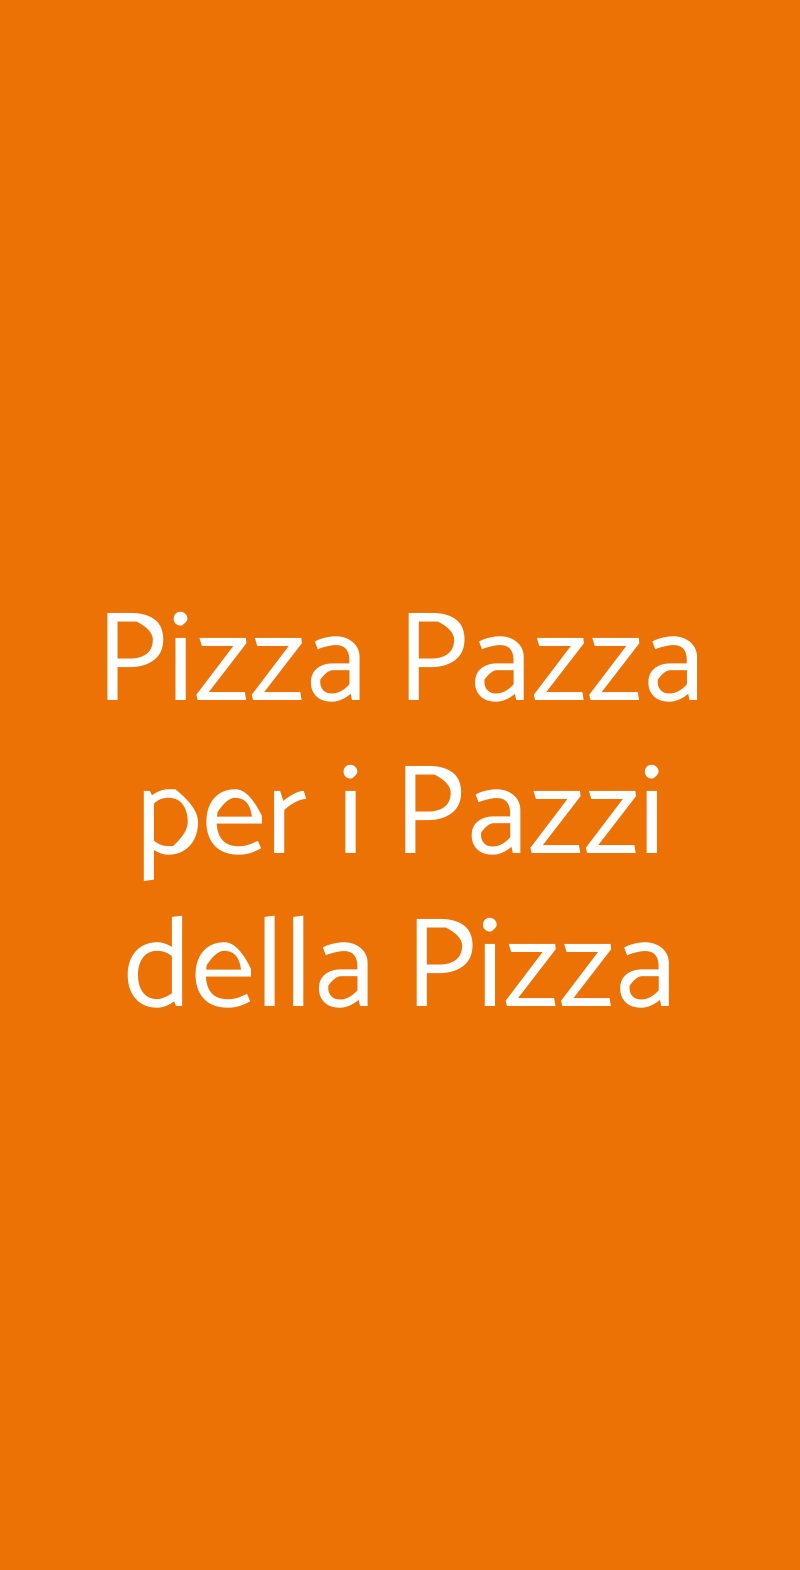 Pizza Pazza per i Pazzi della Pizza Roma menù 1 pagina